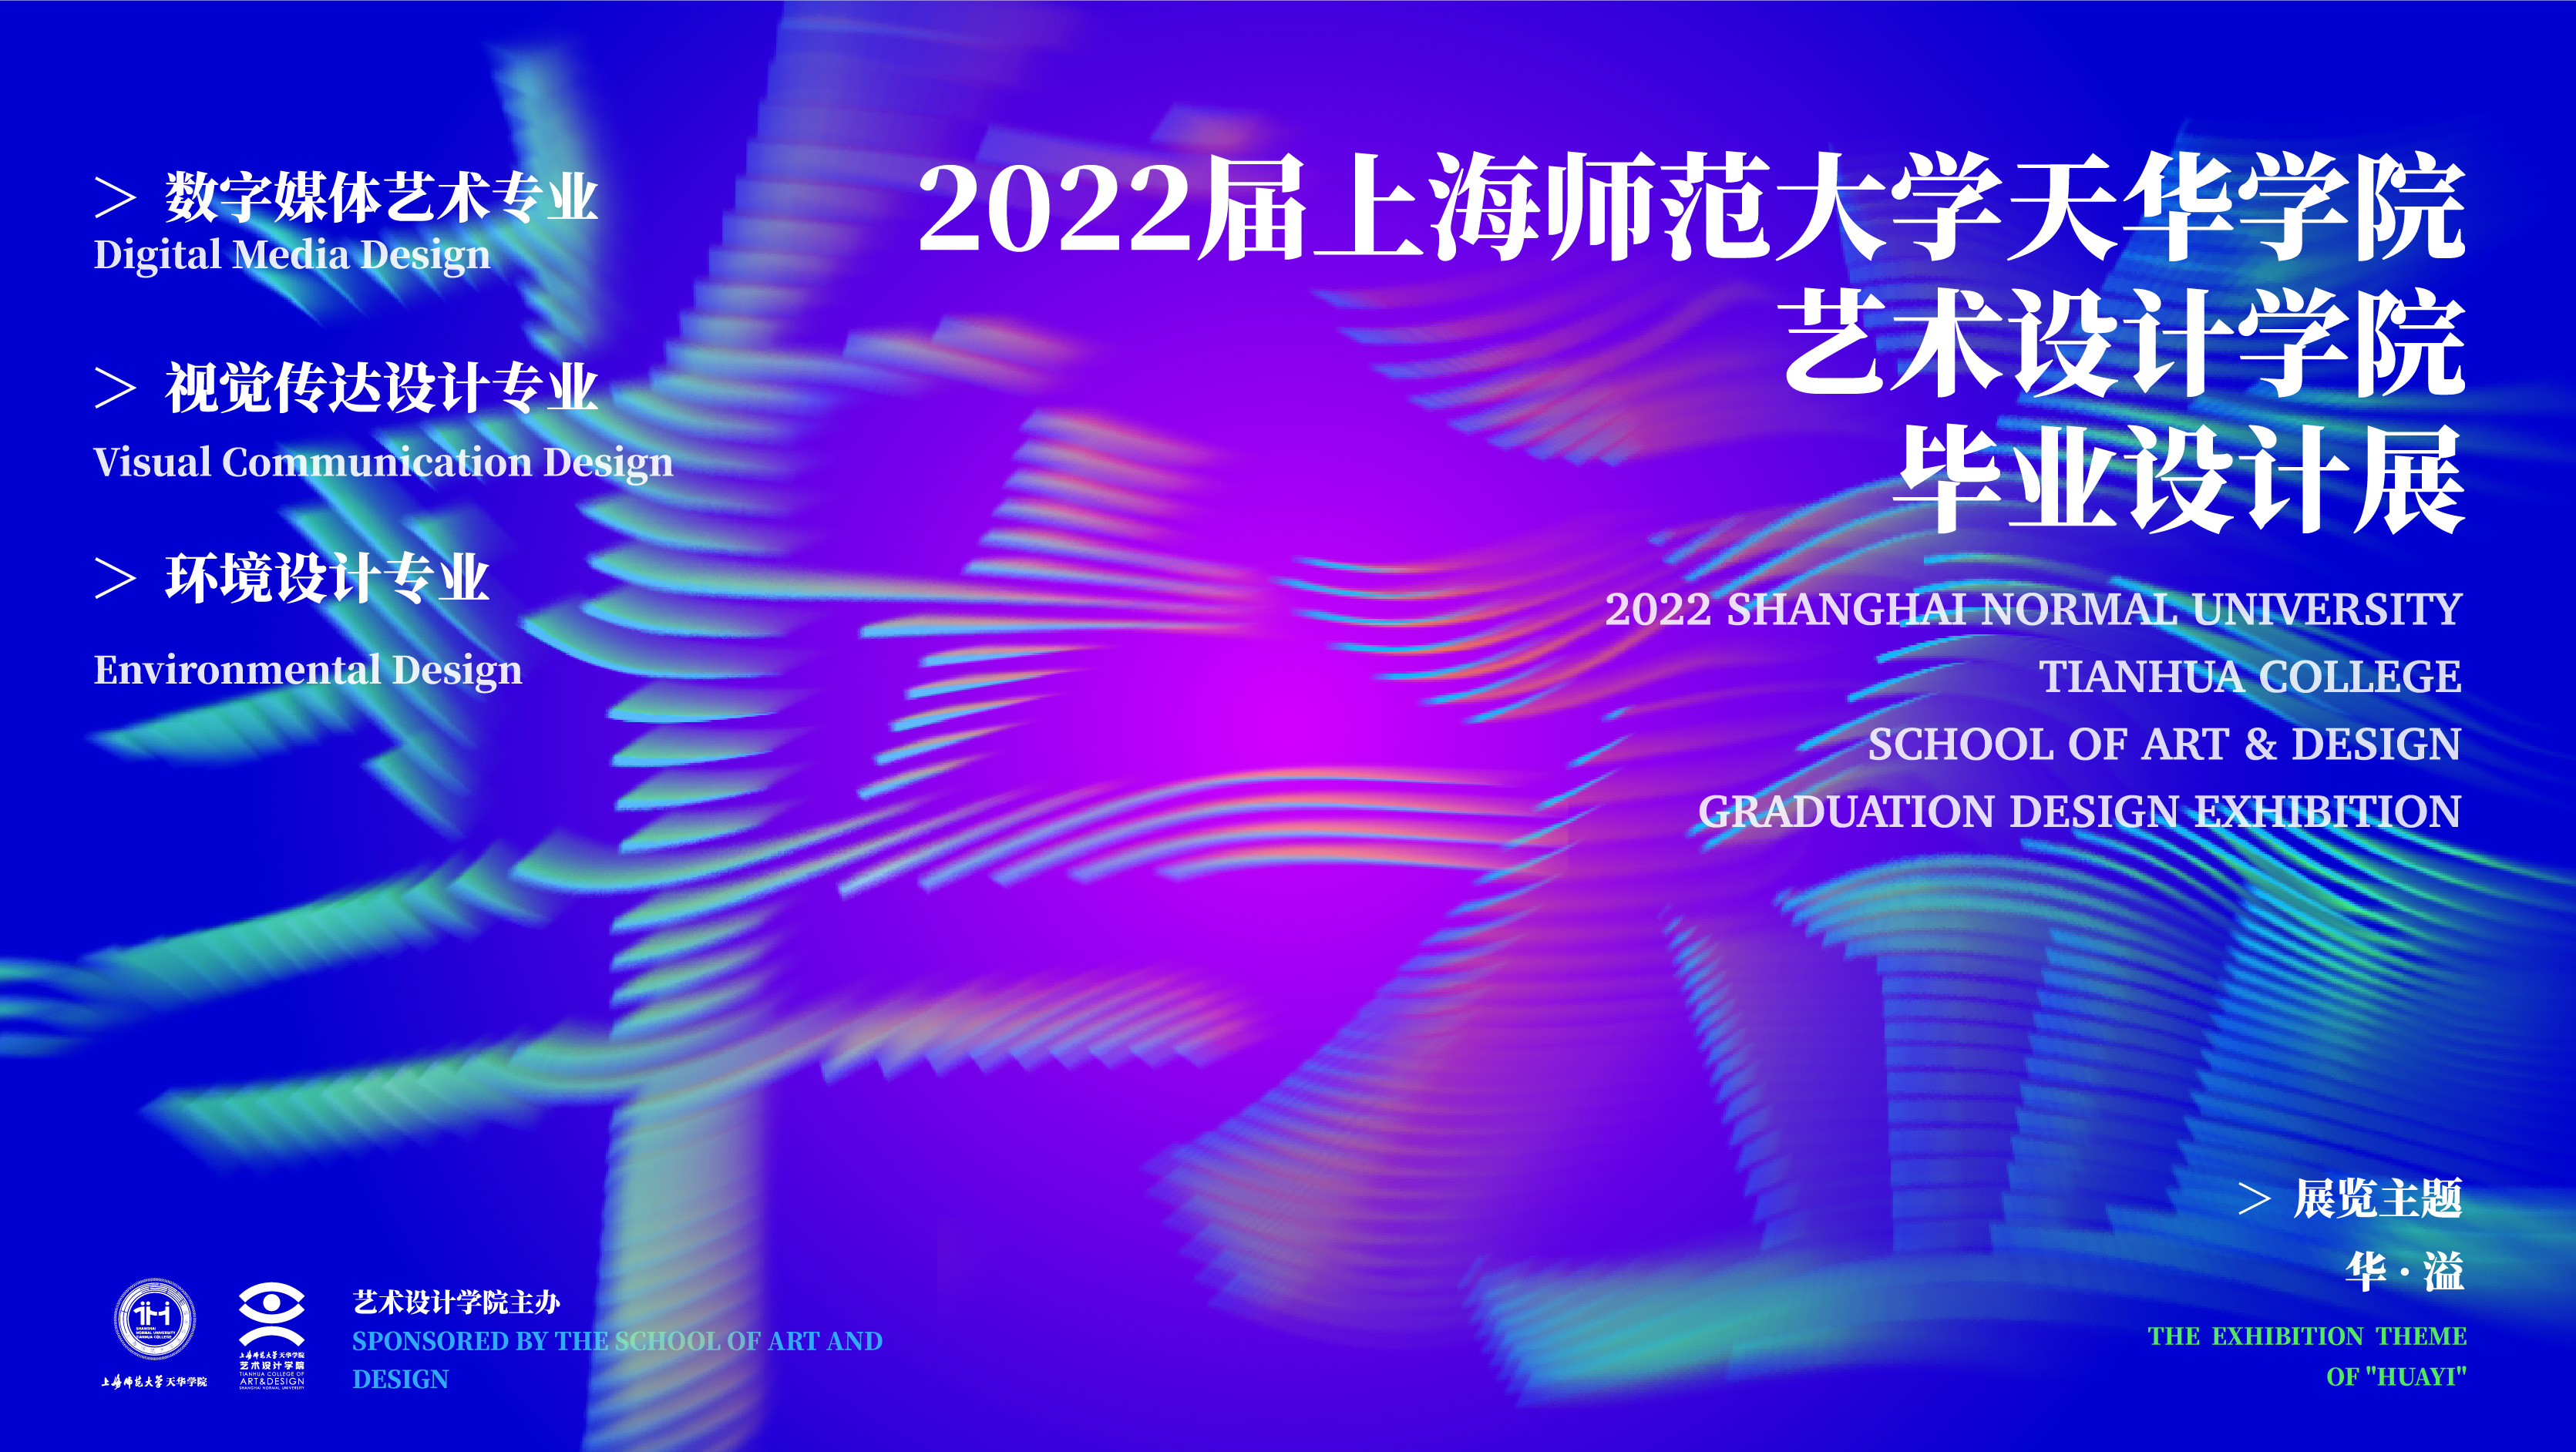 2022届上海师范大学天华学院艺术设计学院毕业设计展览